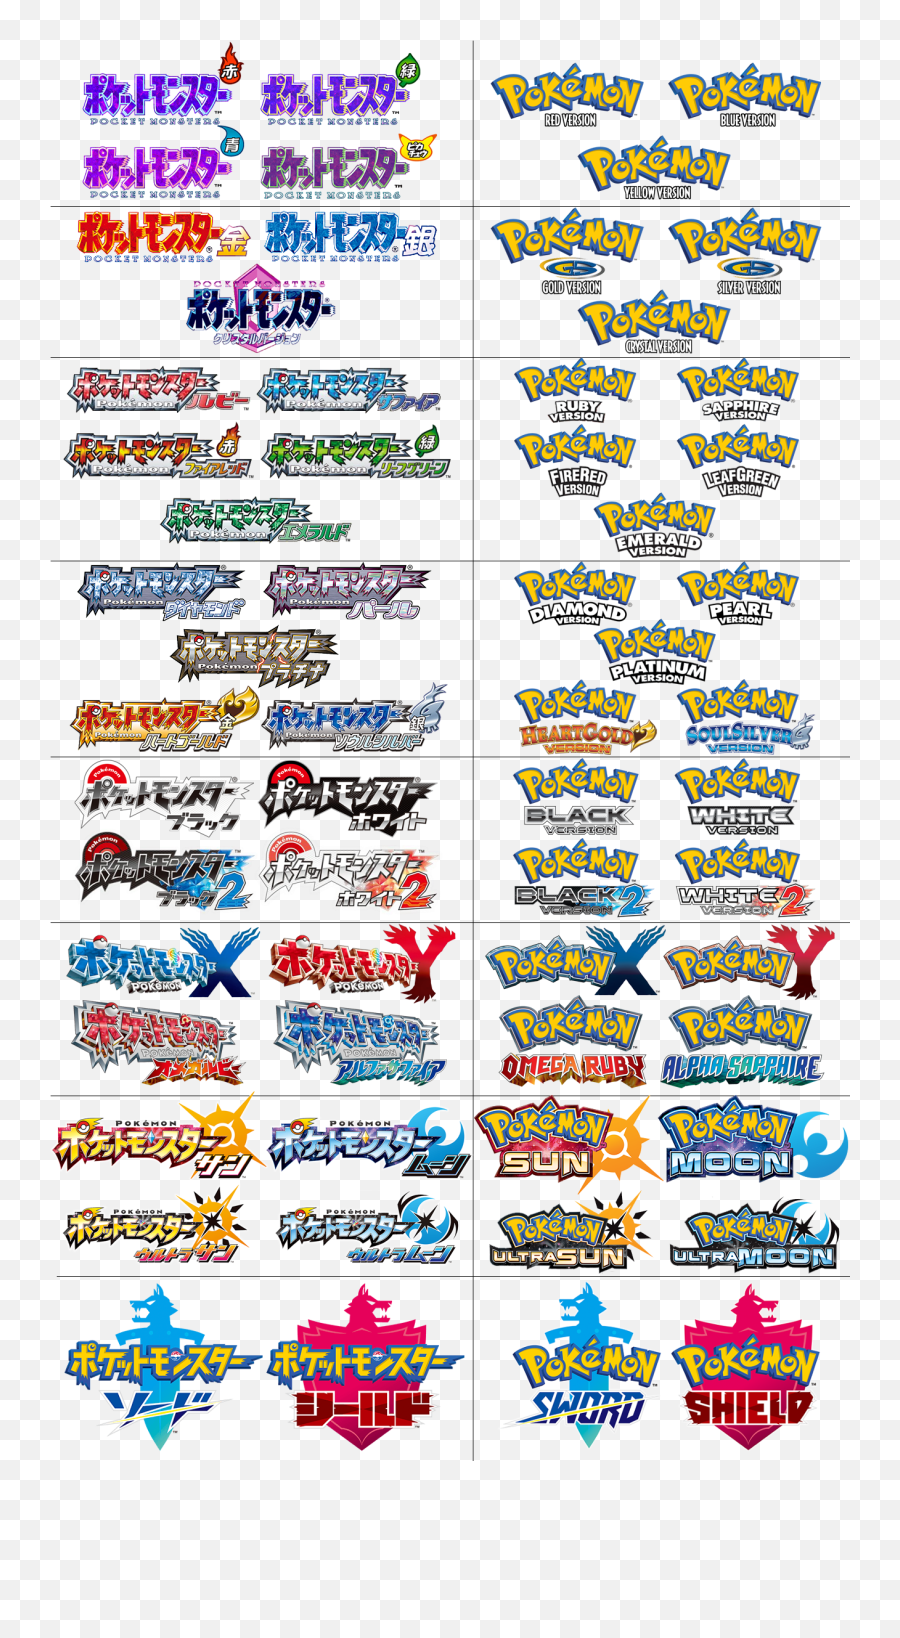 All Pokemon Core Games Png Logo